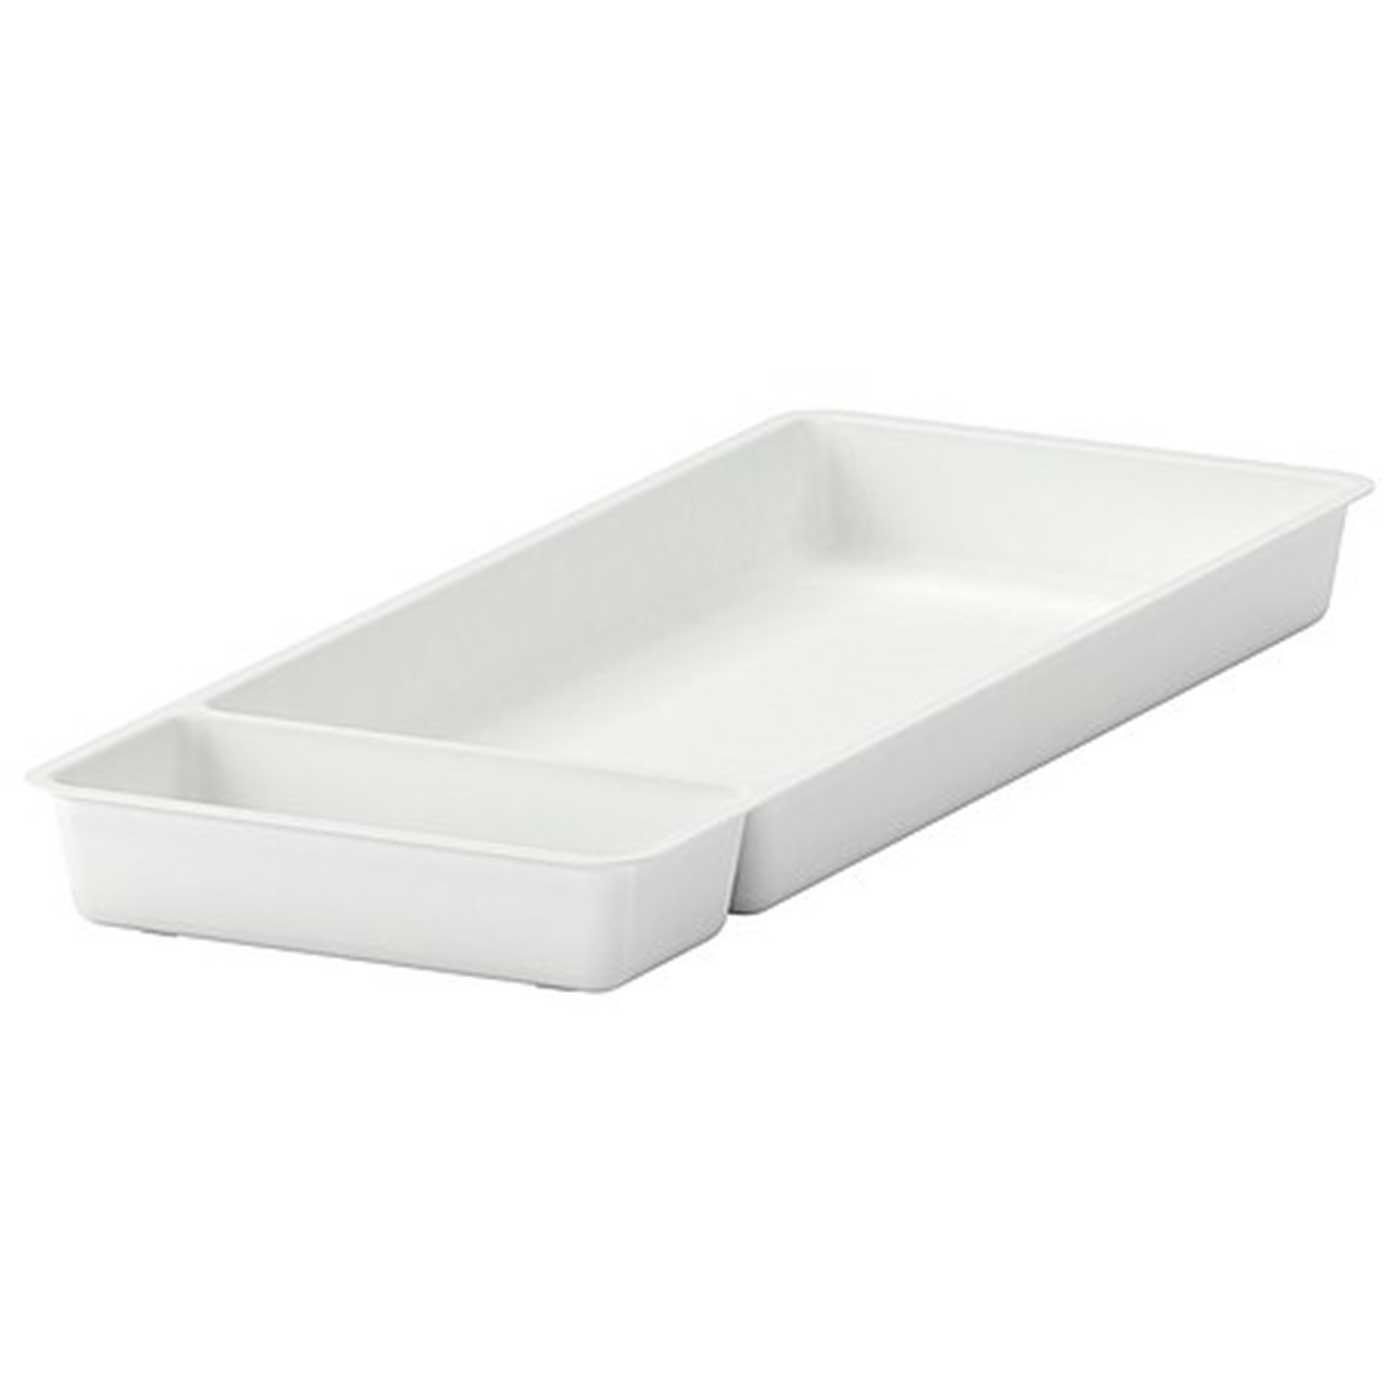 IKEA Stodja Utensil tray, white - 1